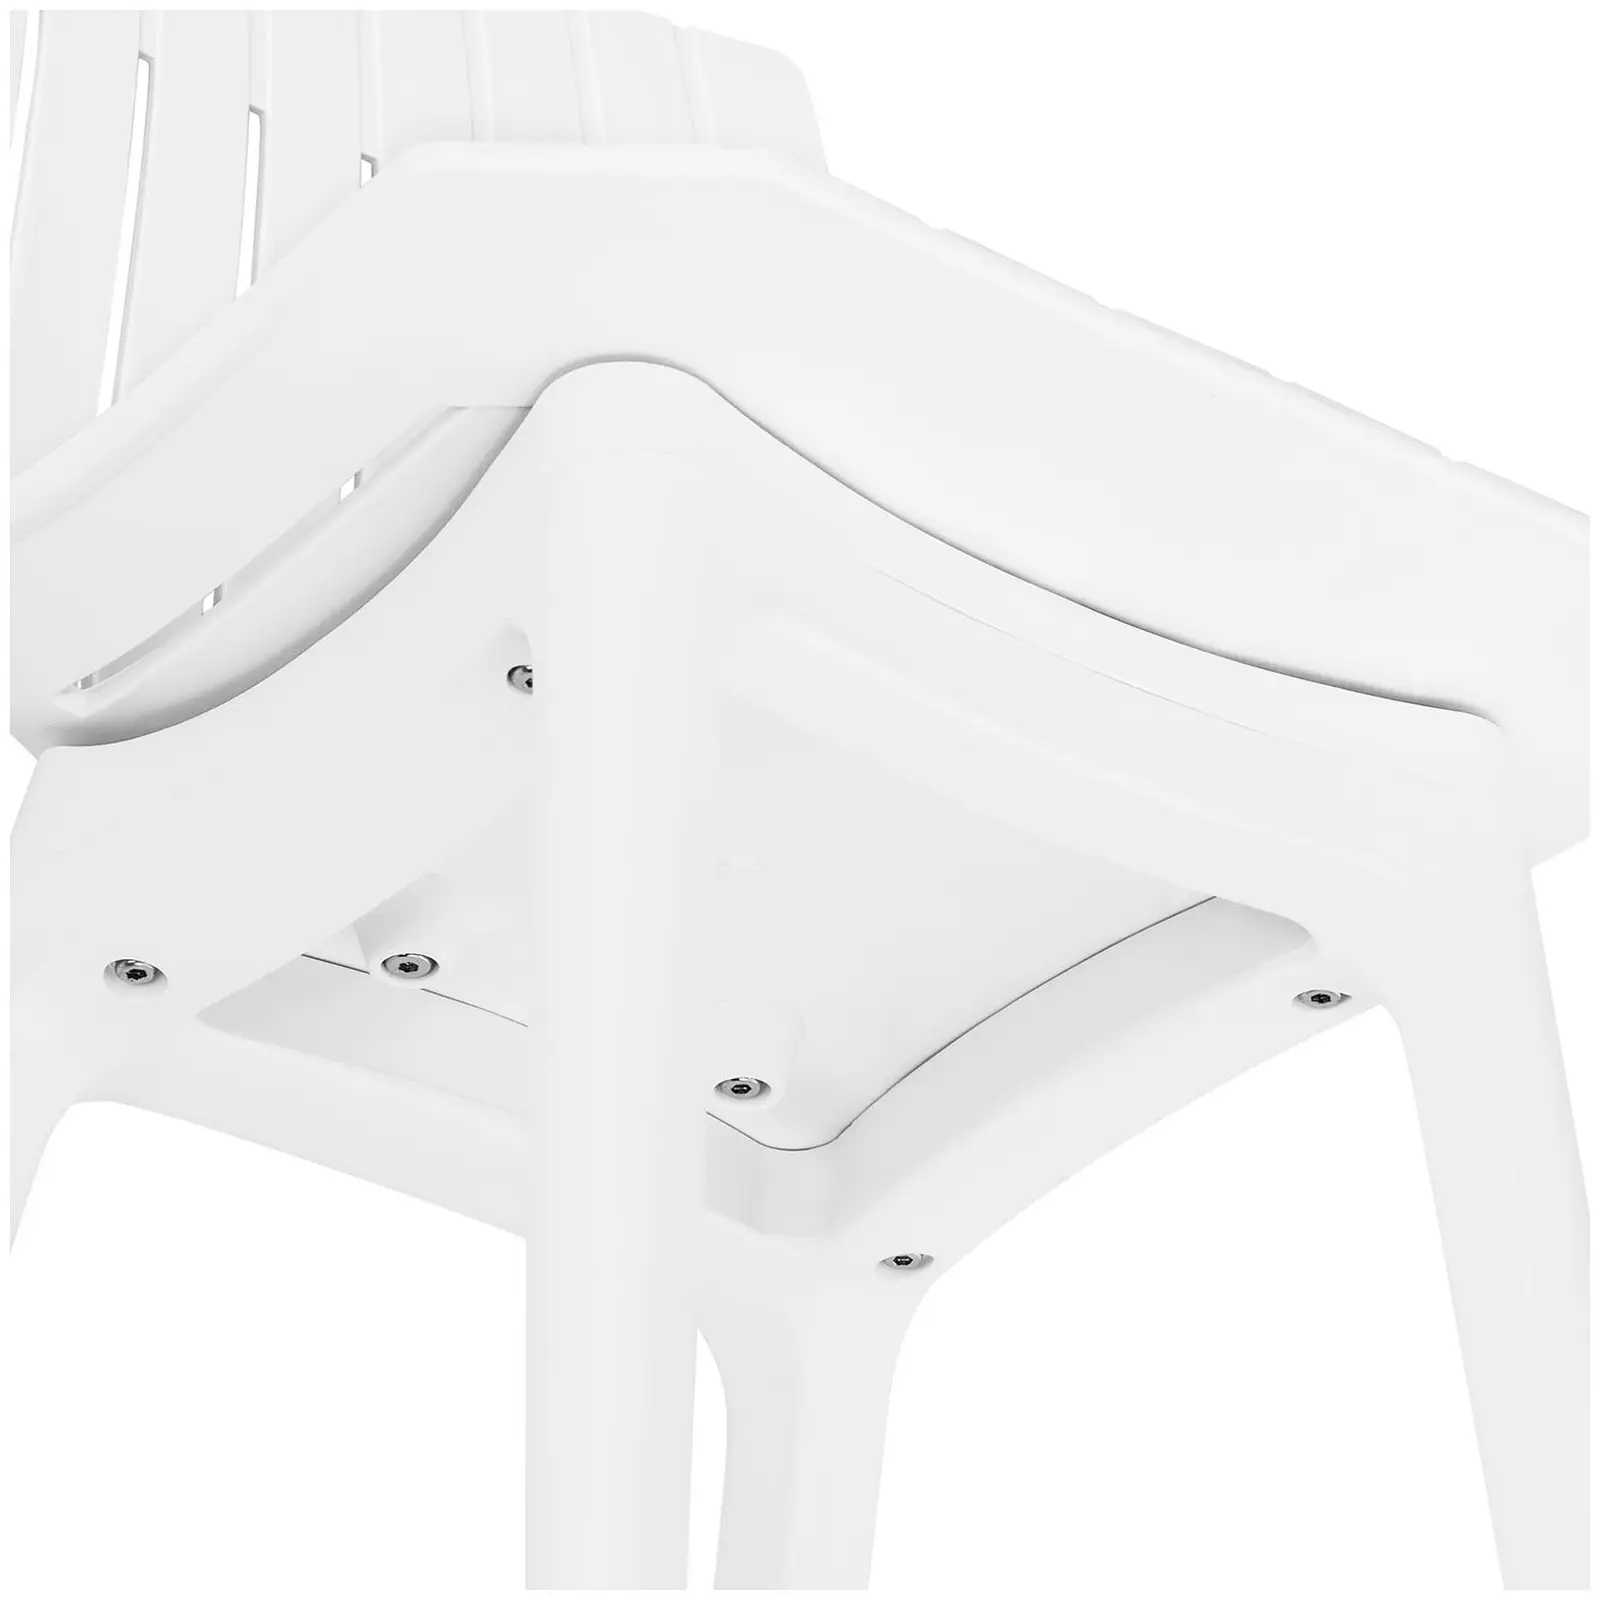 Tuoli - 2 sarja - enintään 150 kg - istuin 47 x 42 cm - valkoinen